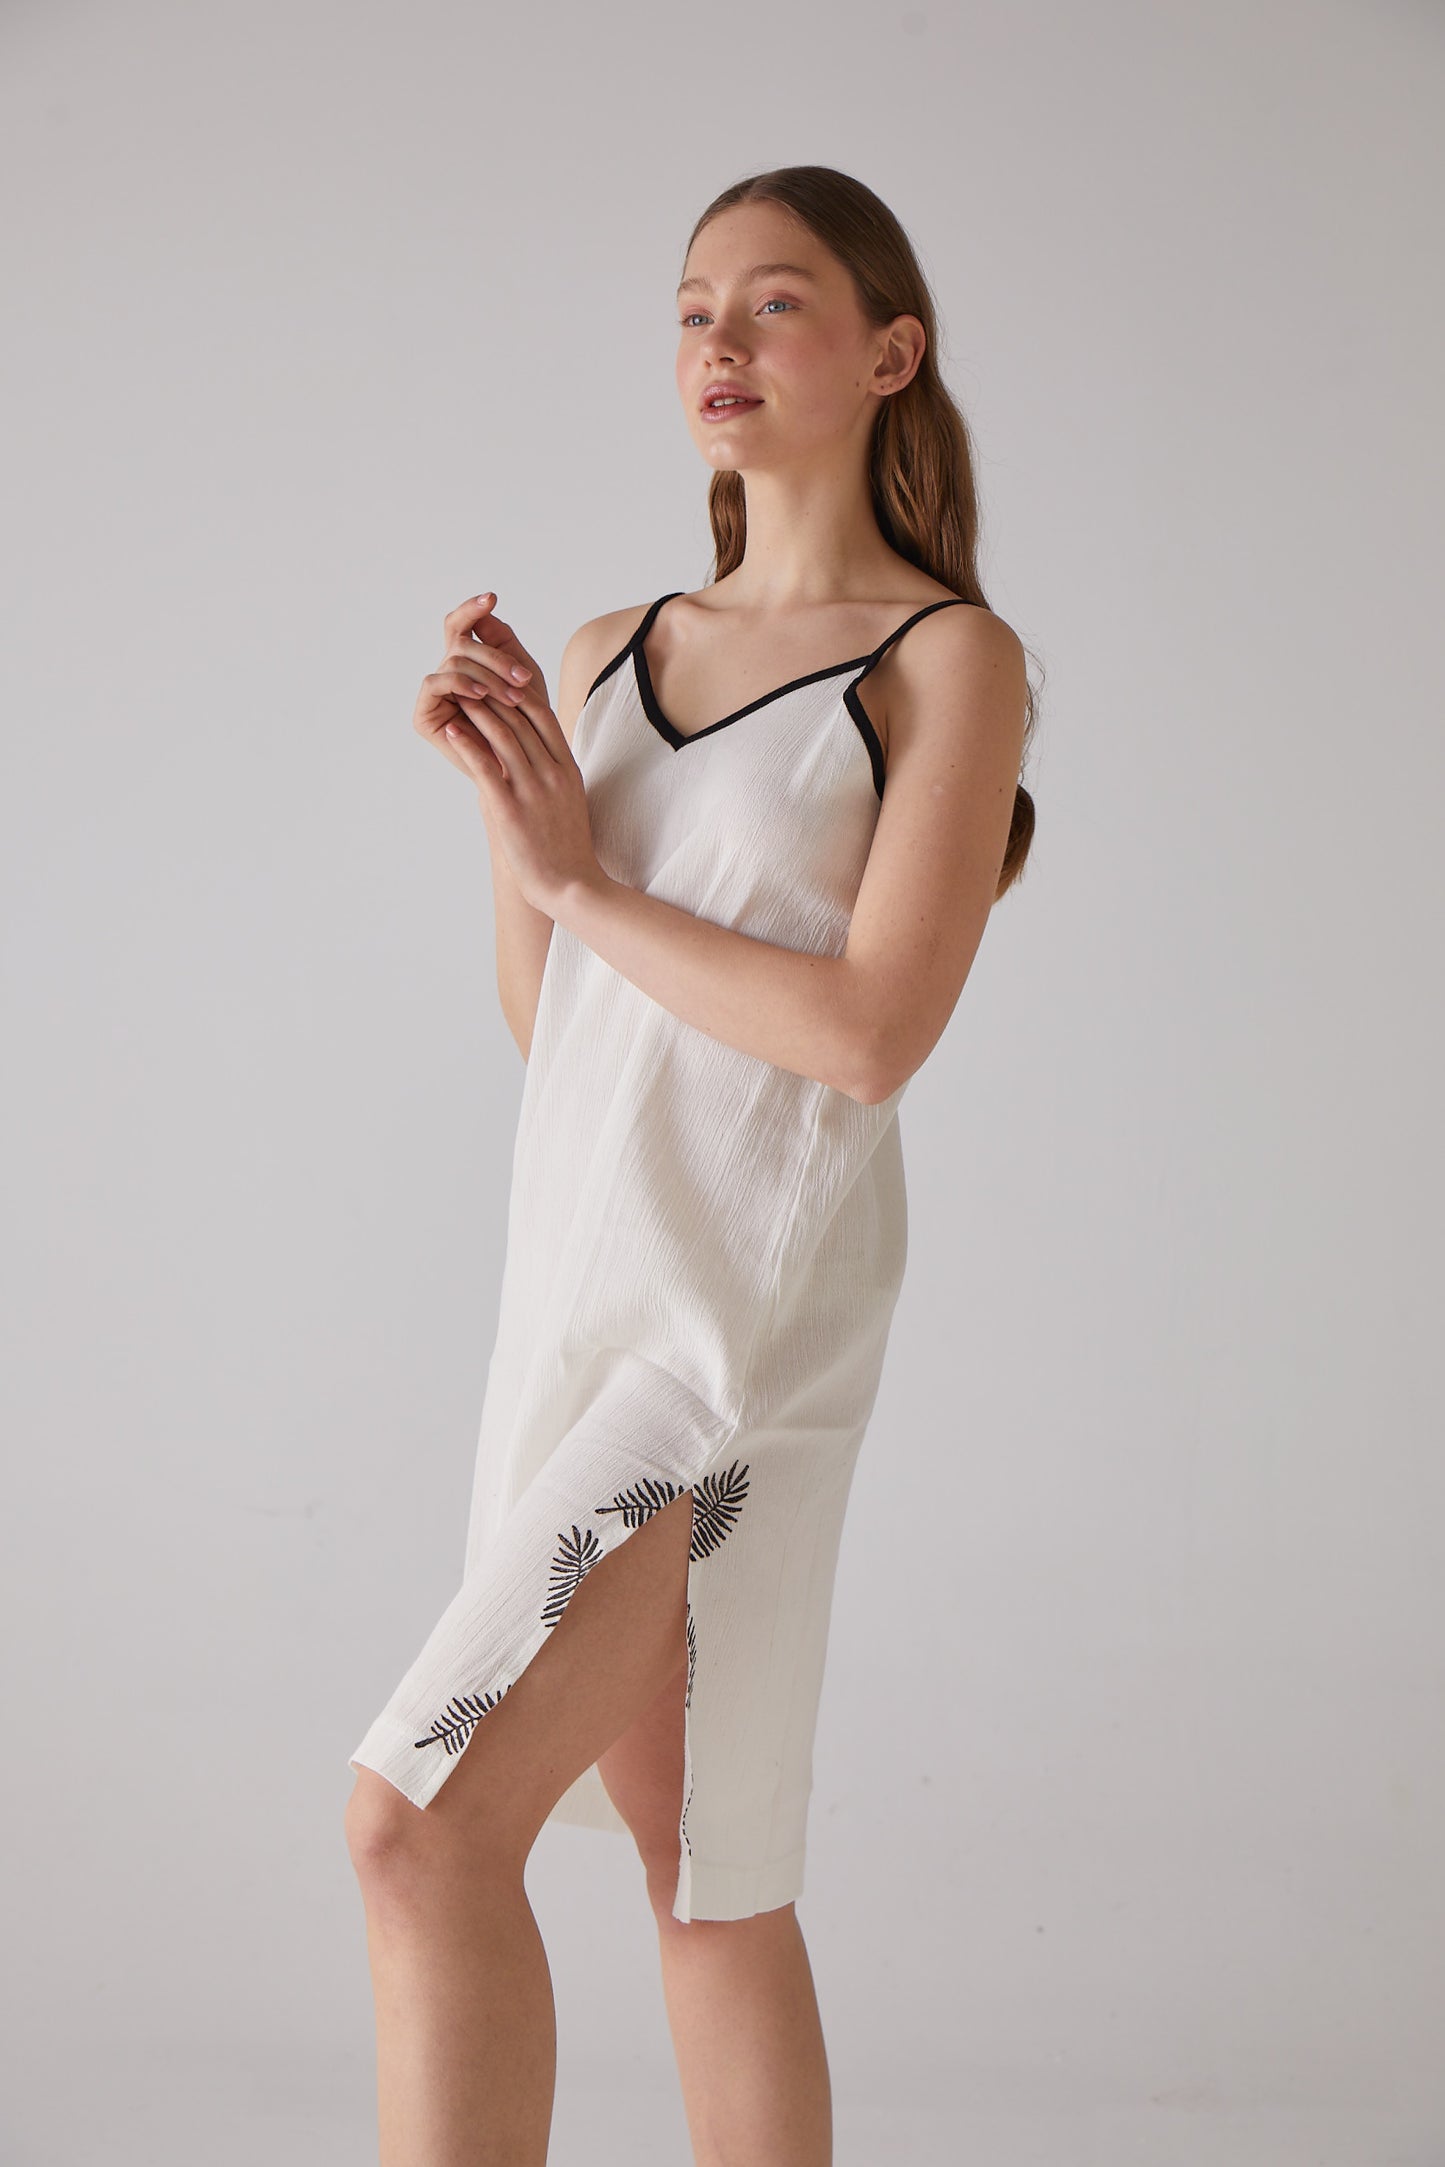 Blattholzschnitt-gemustertes Riemchen-Nachthemd aus weißer %100 Bio-Baumwolle